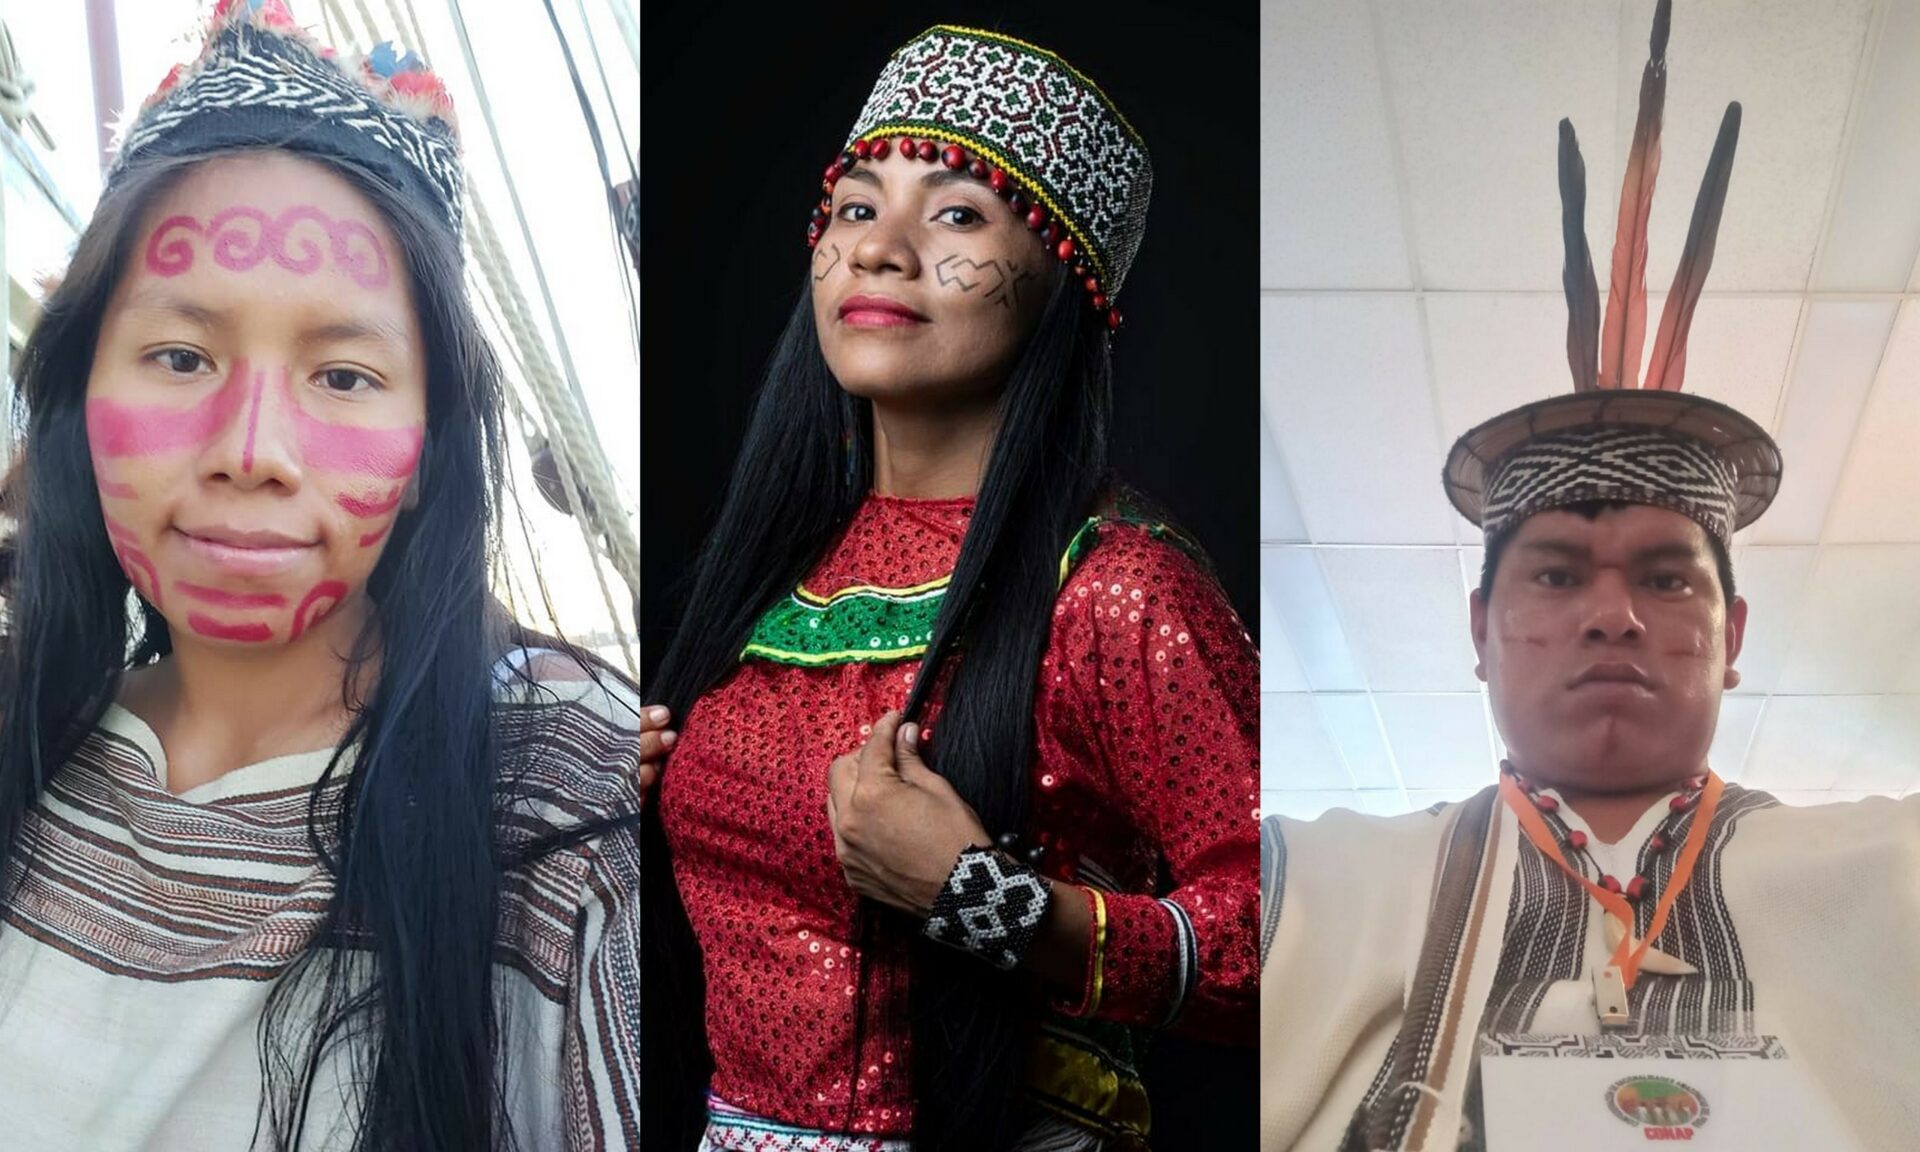 ¡No es nuestro desarrollo! Visiones del futuro de jóvenes indígenas activistas en el Perú